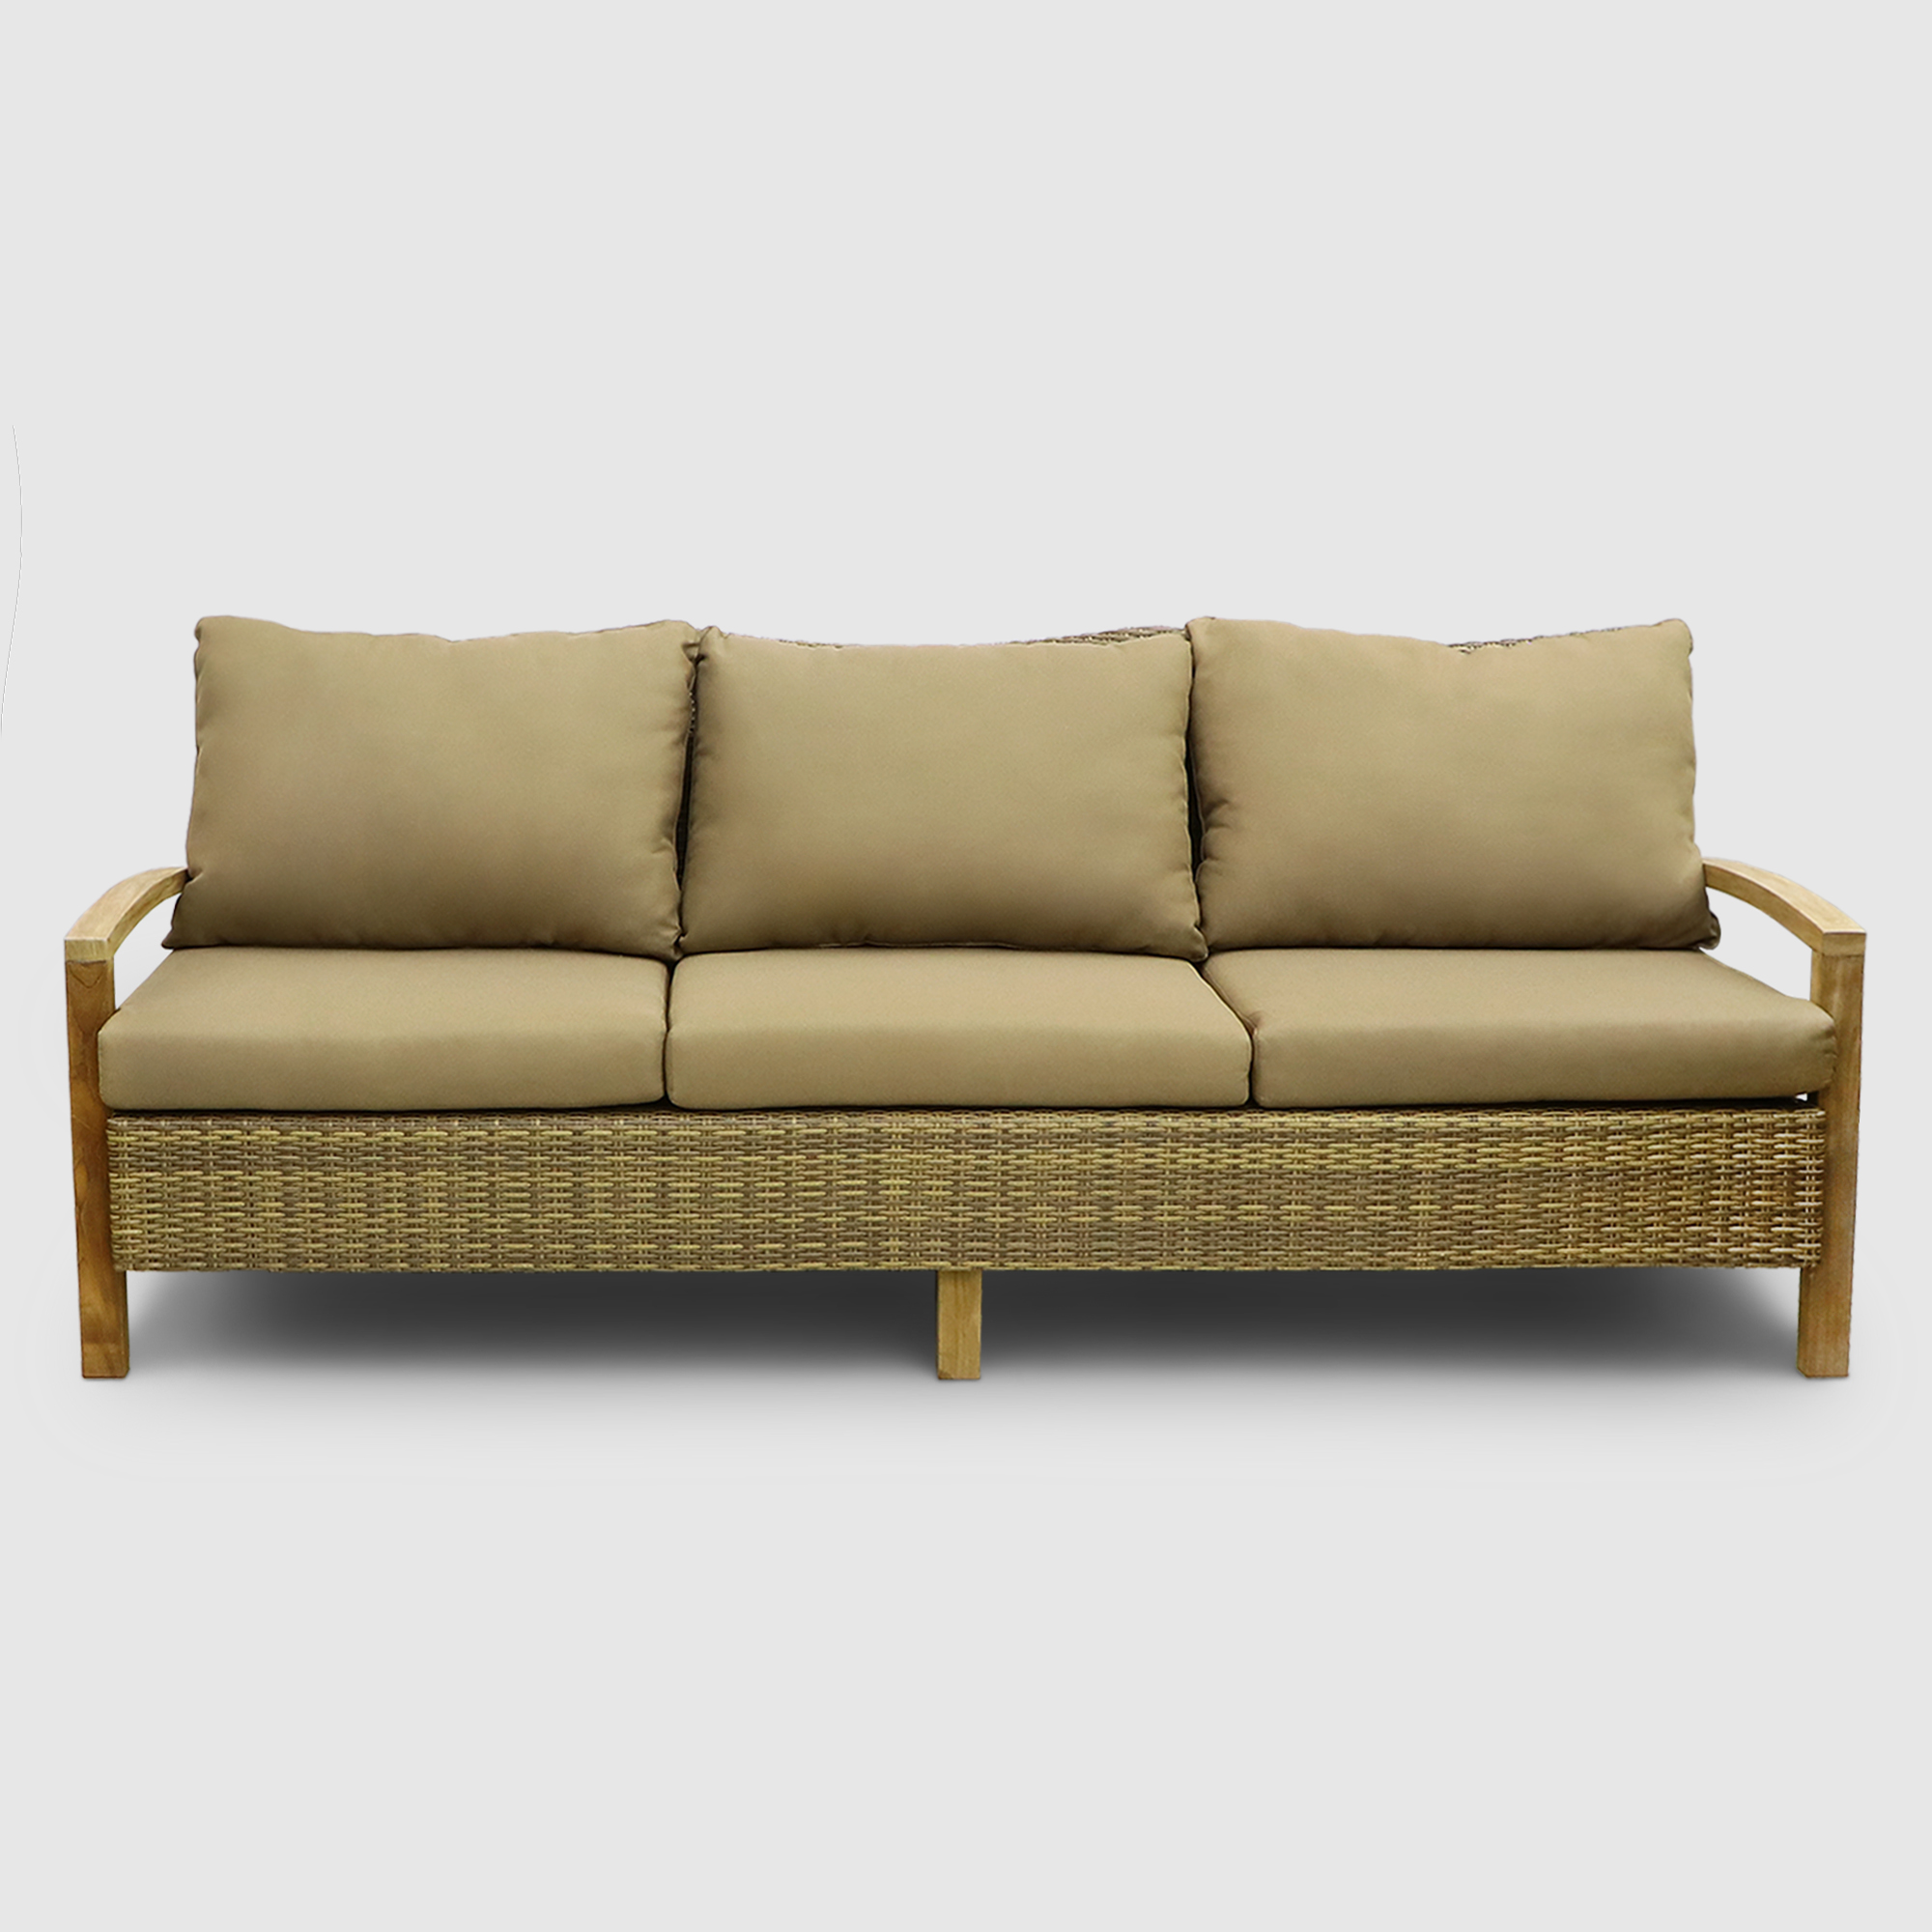 Комплект мебели Jepara Bastian 5 предметов, цвет светло-коричневый, размер 240х88х125 - фото 3